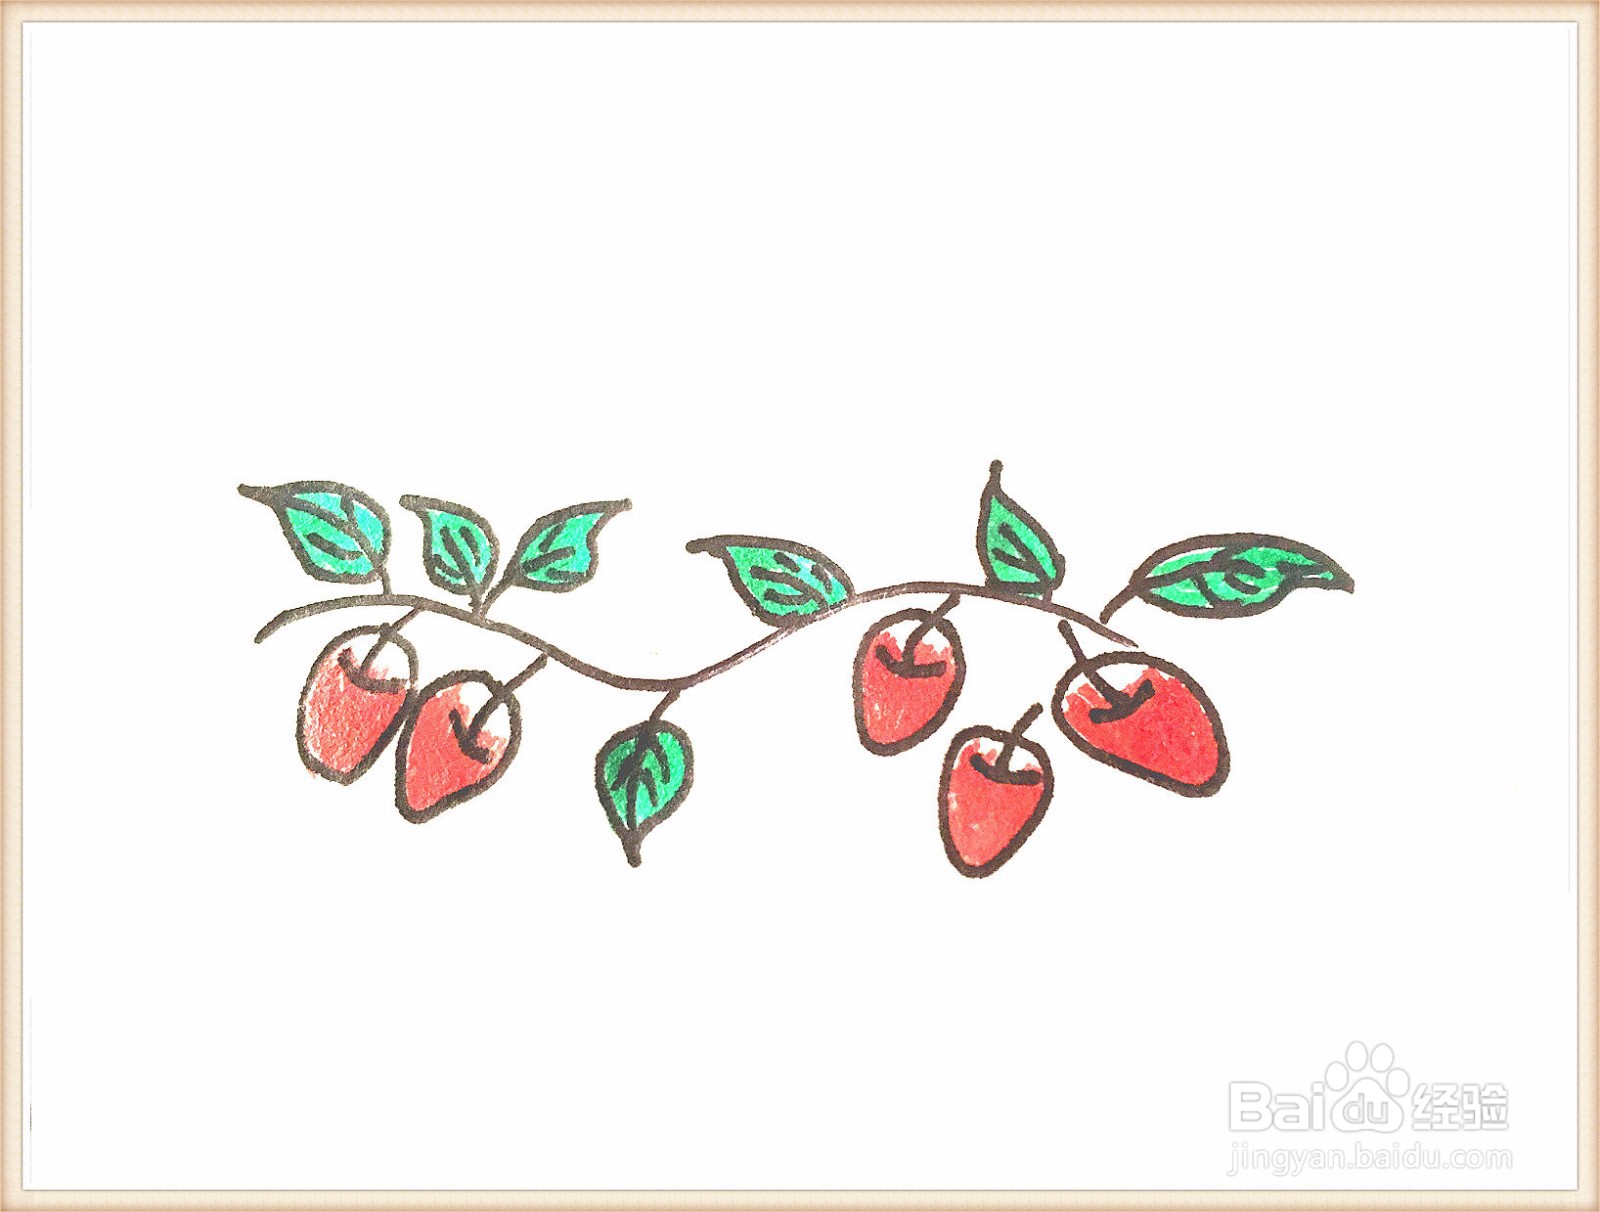 红枣的画法图片